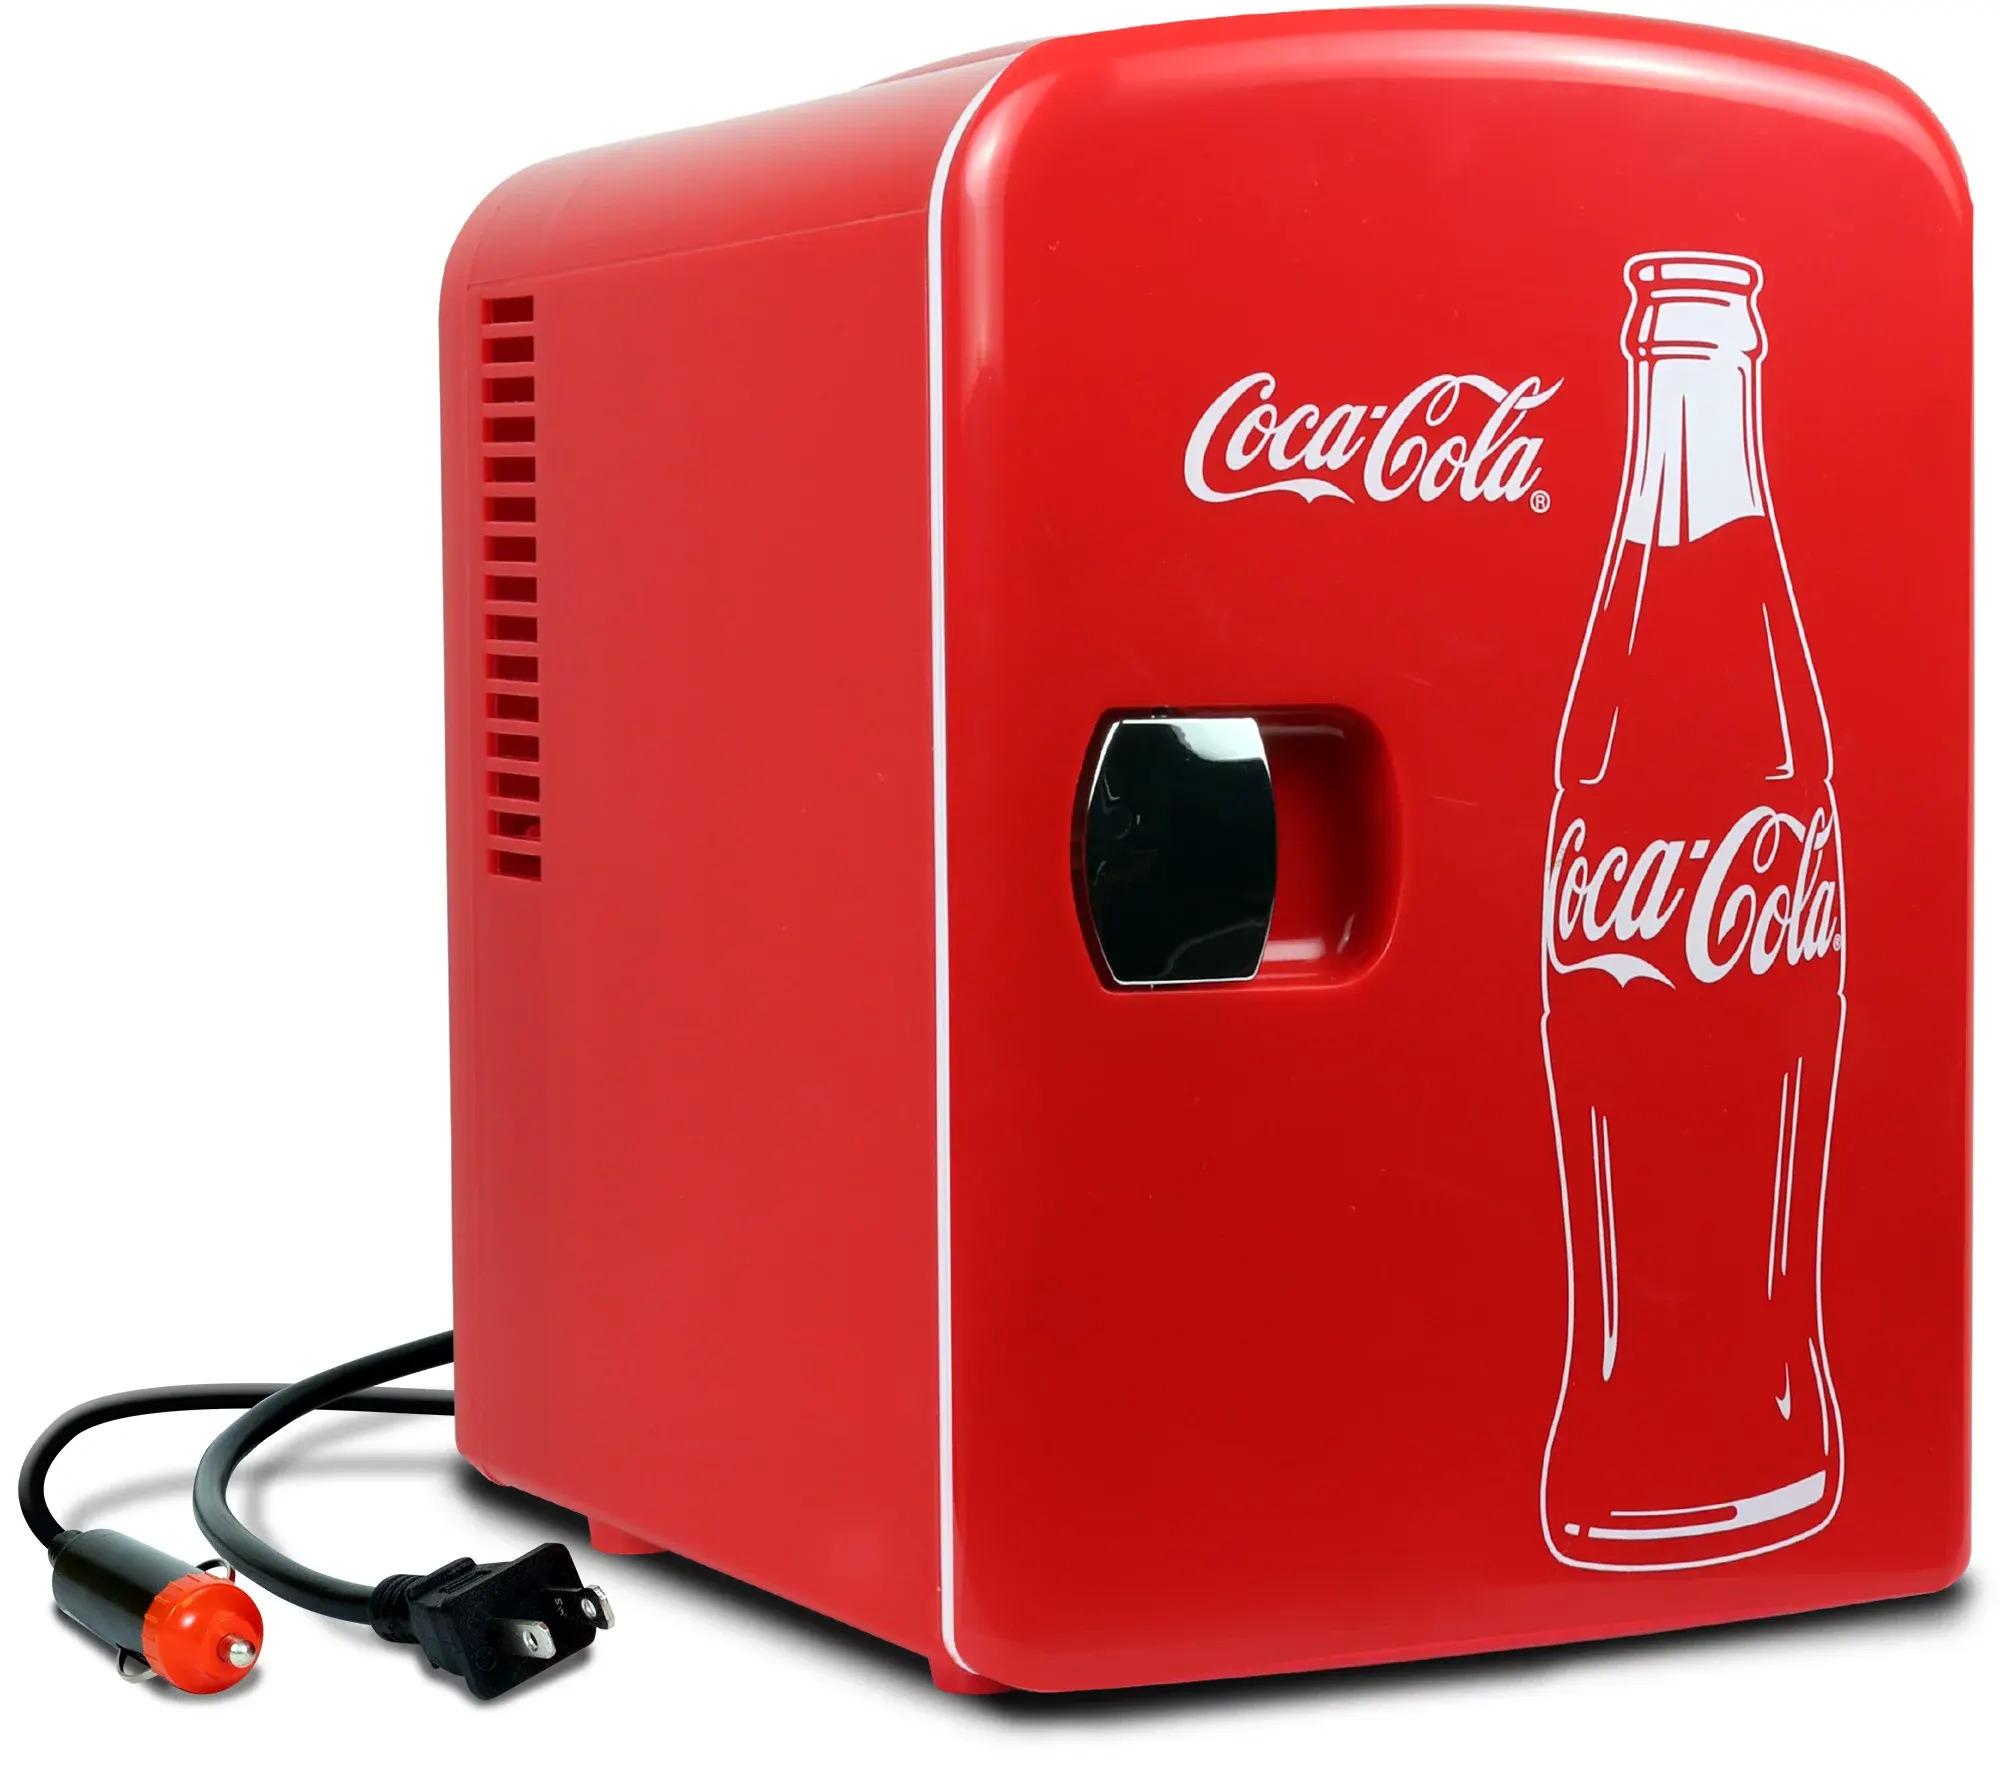 Coca-Cola Classic 4L Mini Fridge with 12V DC for $19.98